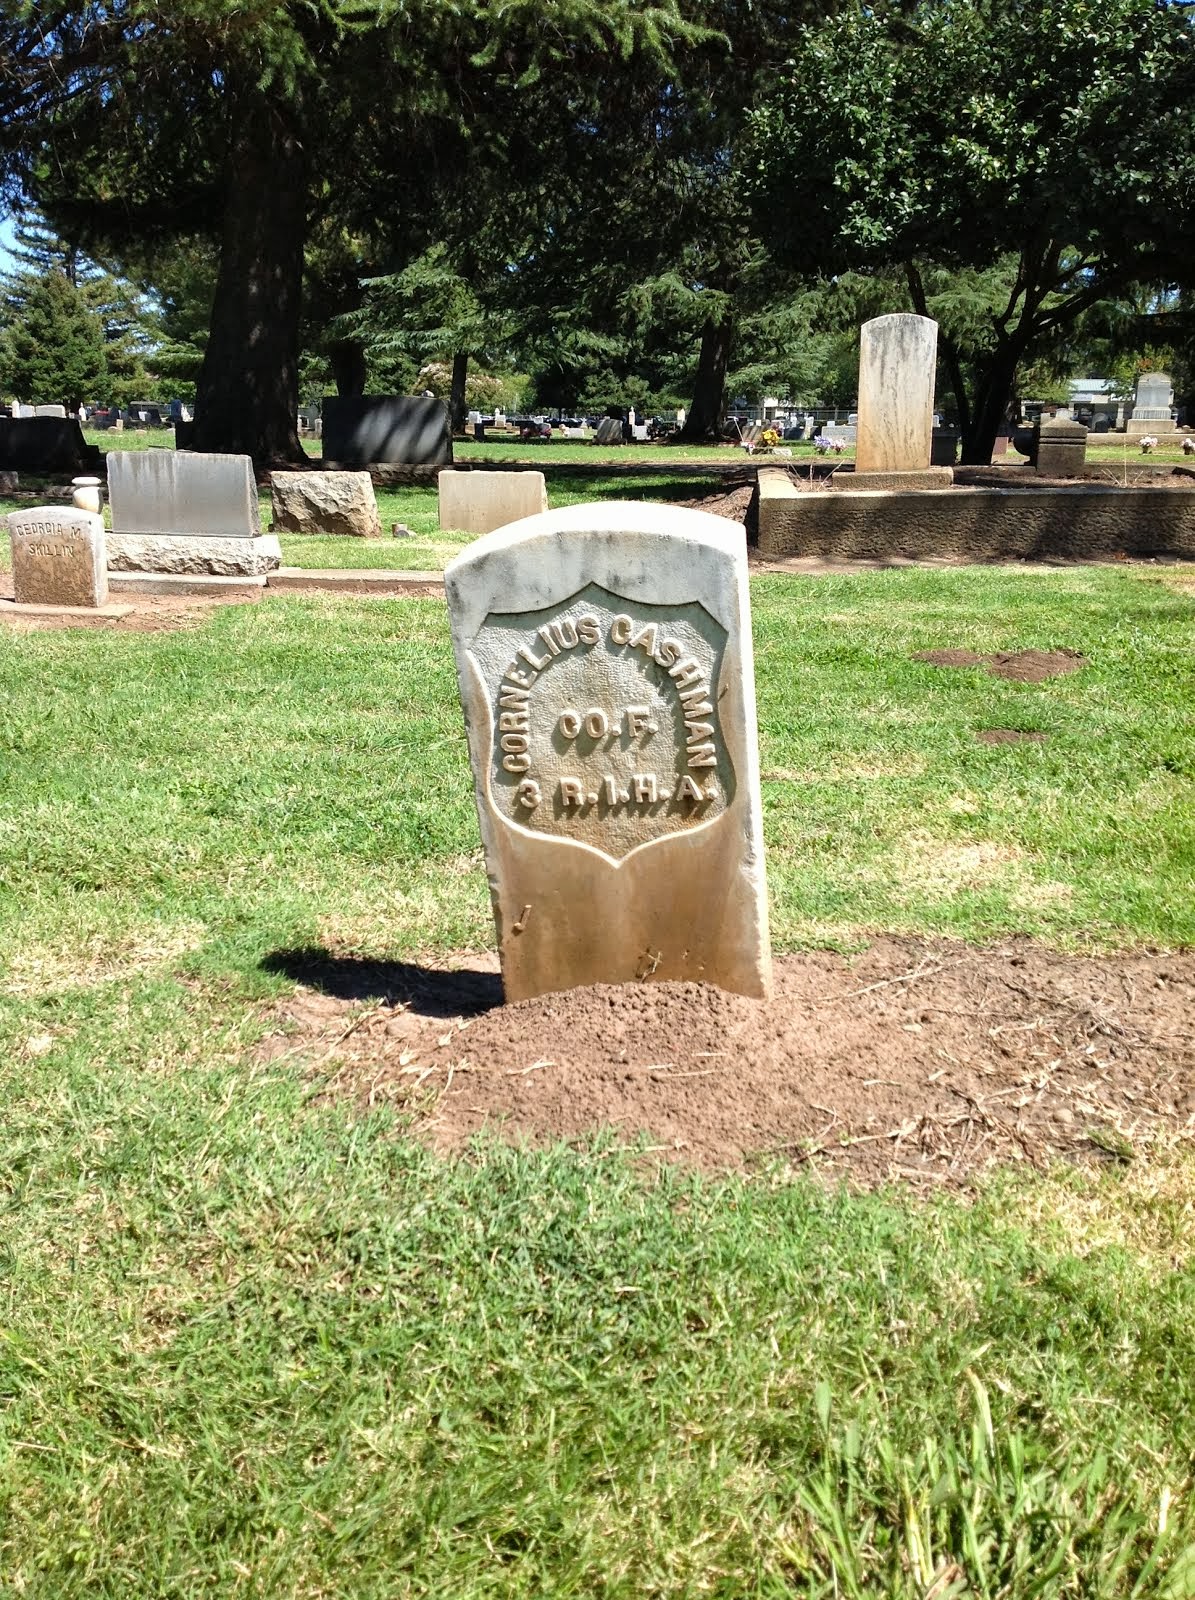 Headstone of Cornelius Cashman, Private with 3rd Rhode Island Heavy Artillery, Co. F.